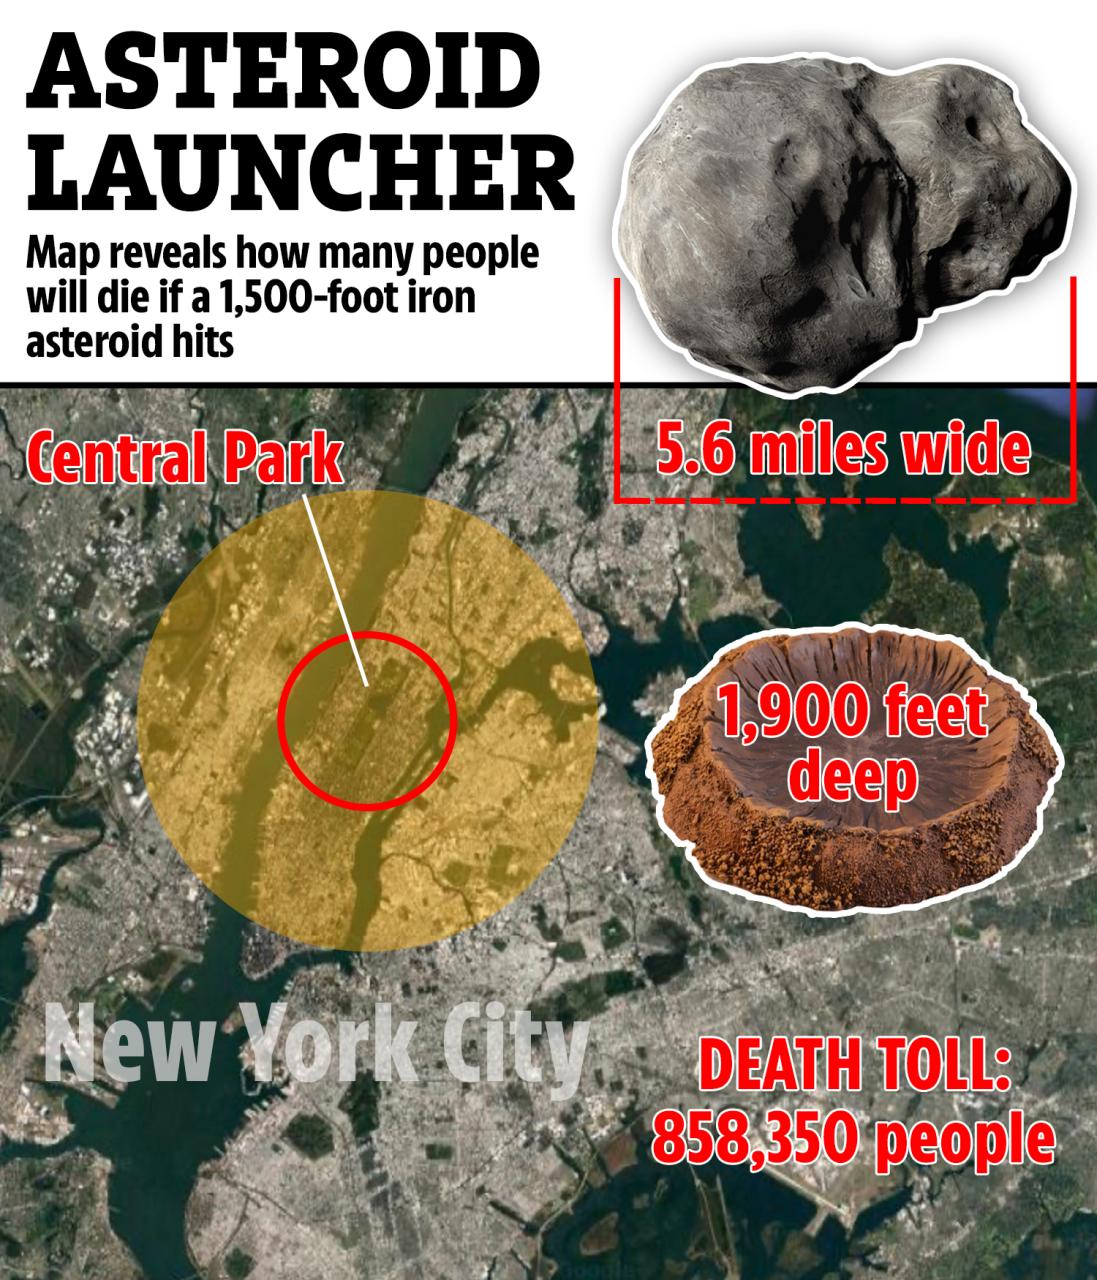 Un asteroide de hierro de 1,500 pies que golpeó Central Park habría vaporizado a casi 900,000 personas y creado un cráter de 5.6 millas de ancho